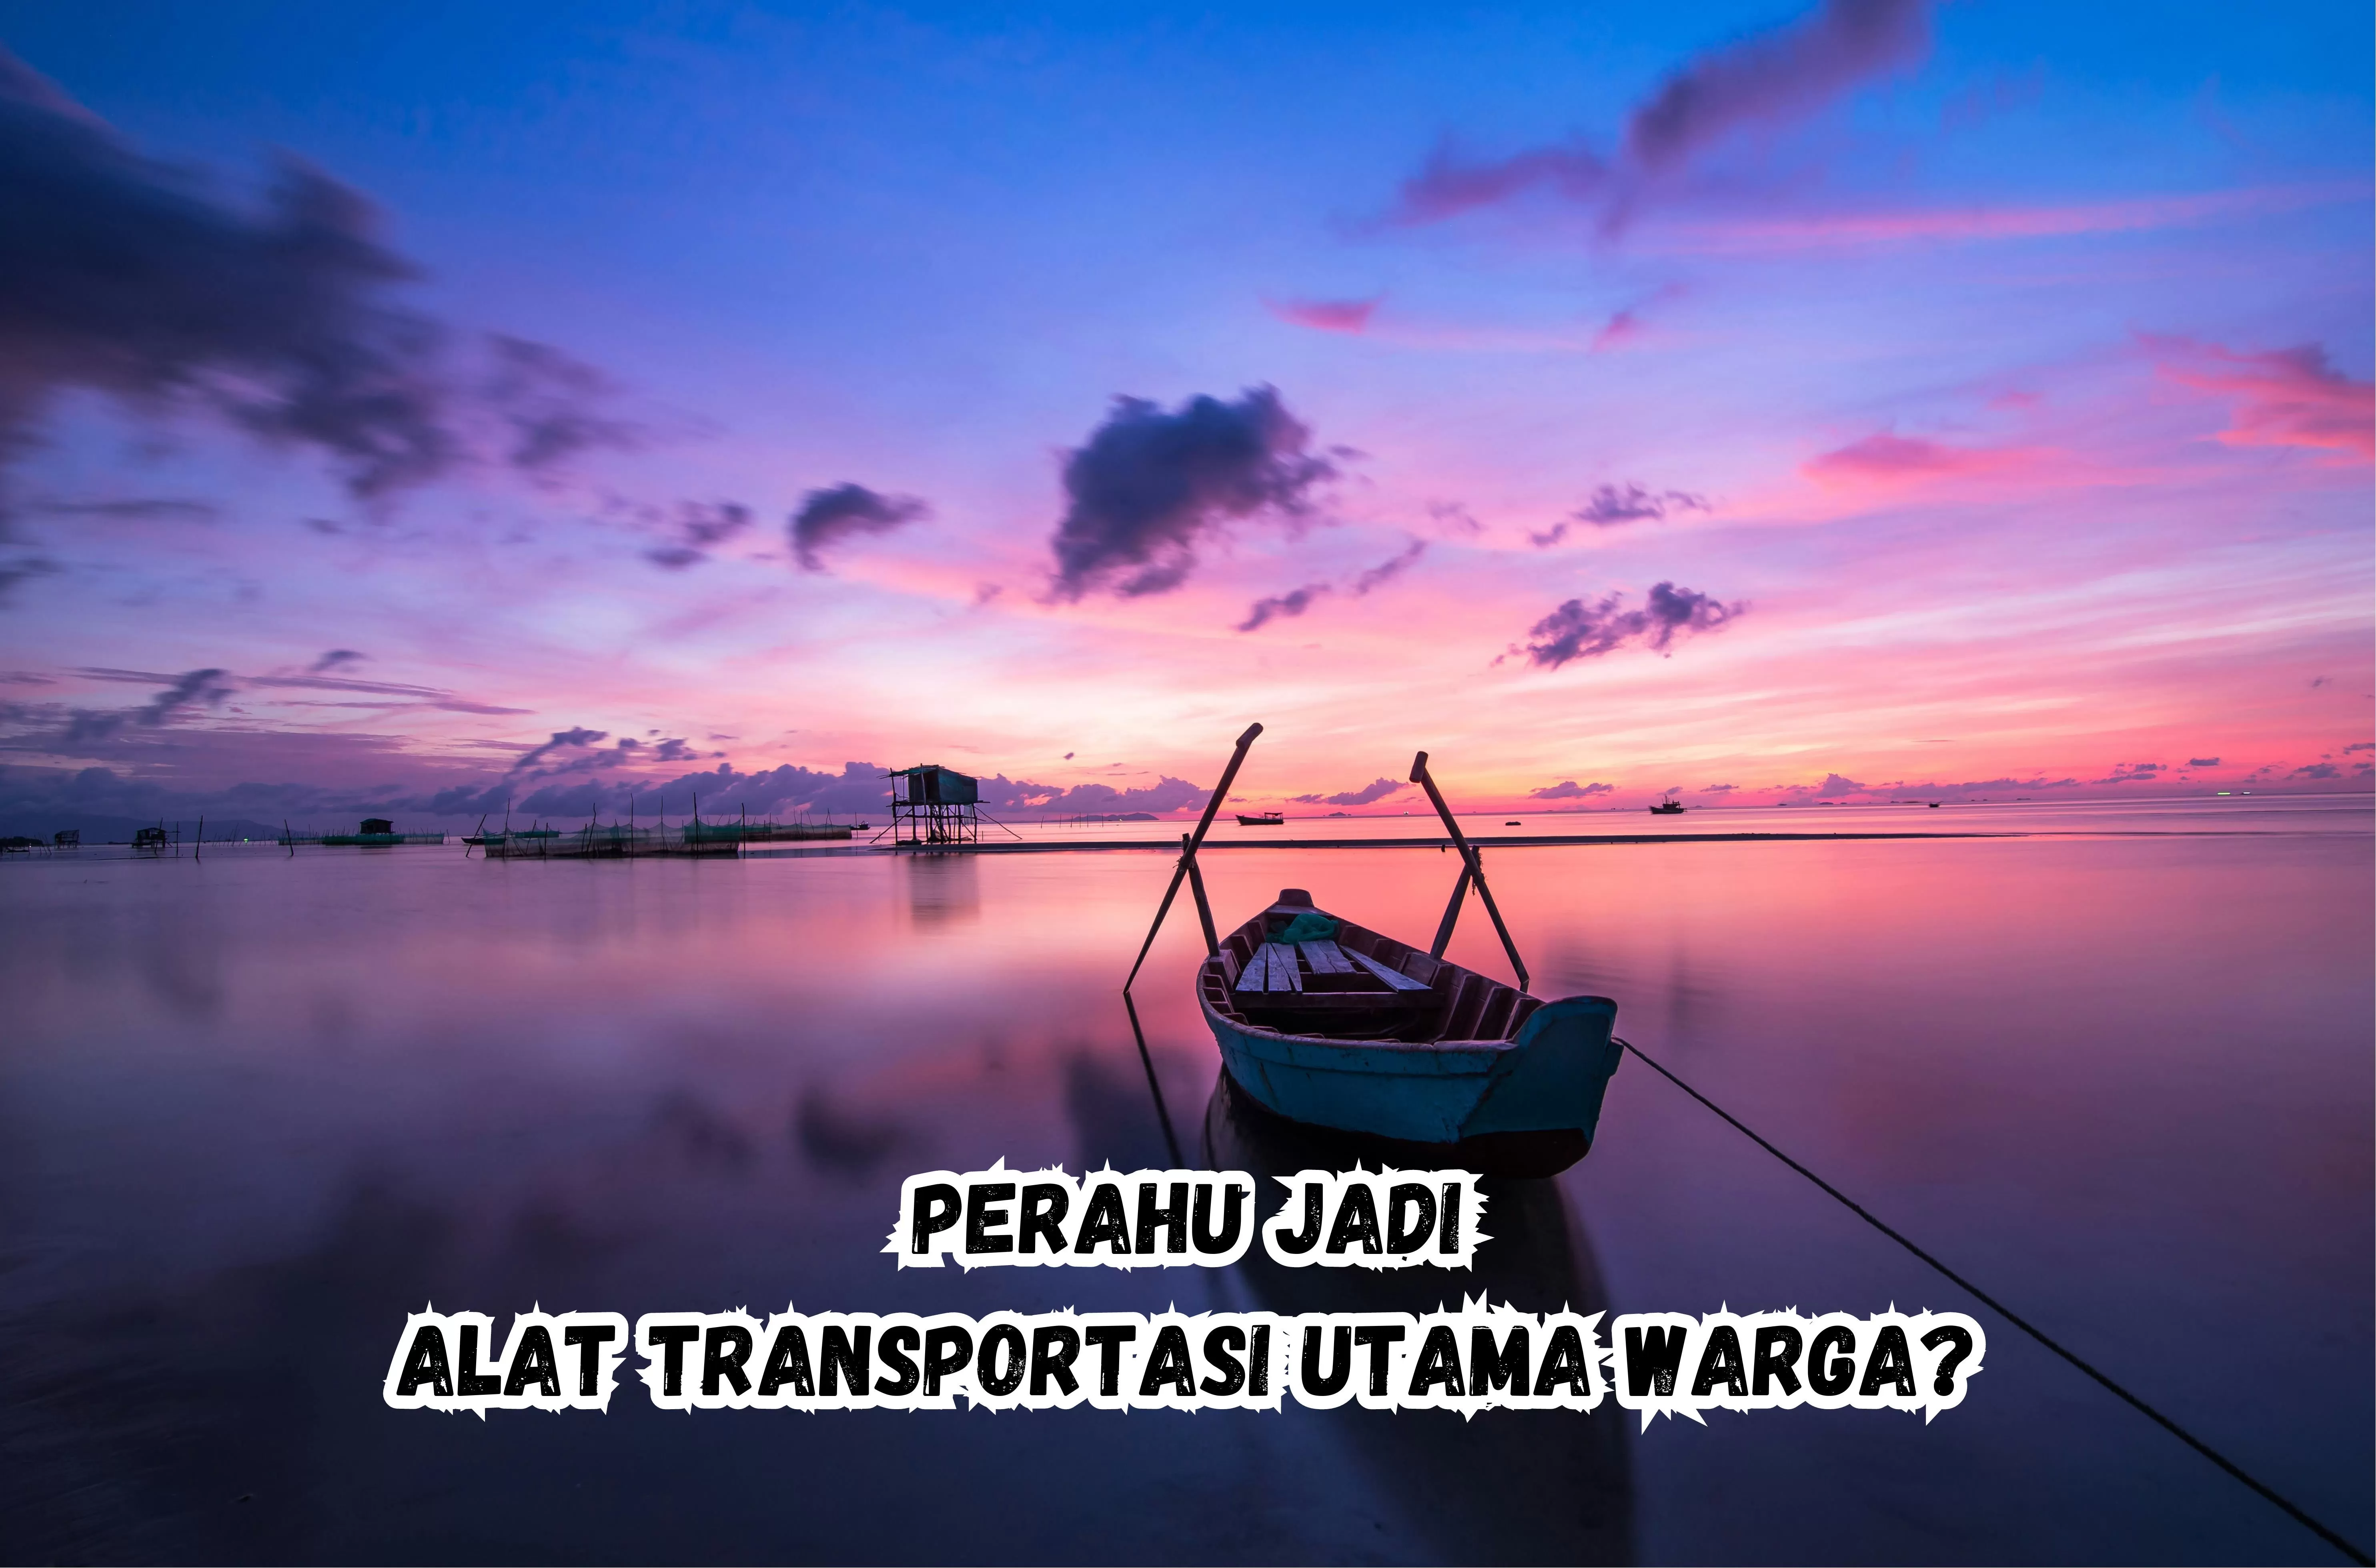 Jumlah Penduduk 14.000 Jiwa, Kampung di Cilacap Ini Transportasi Utamanya Perahu? Berbatasan dengan Jawa Barat...